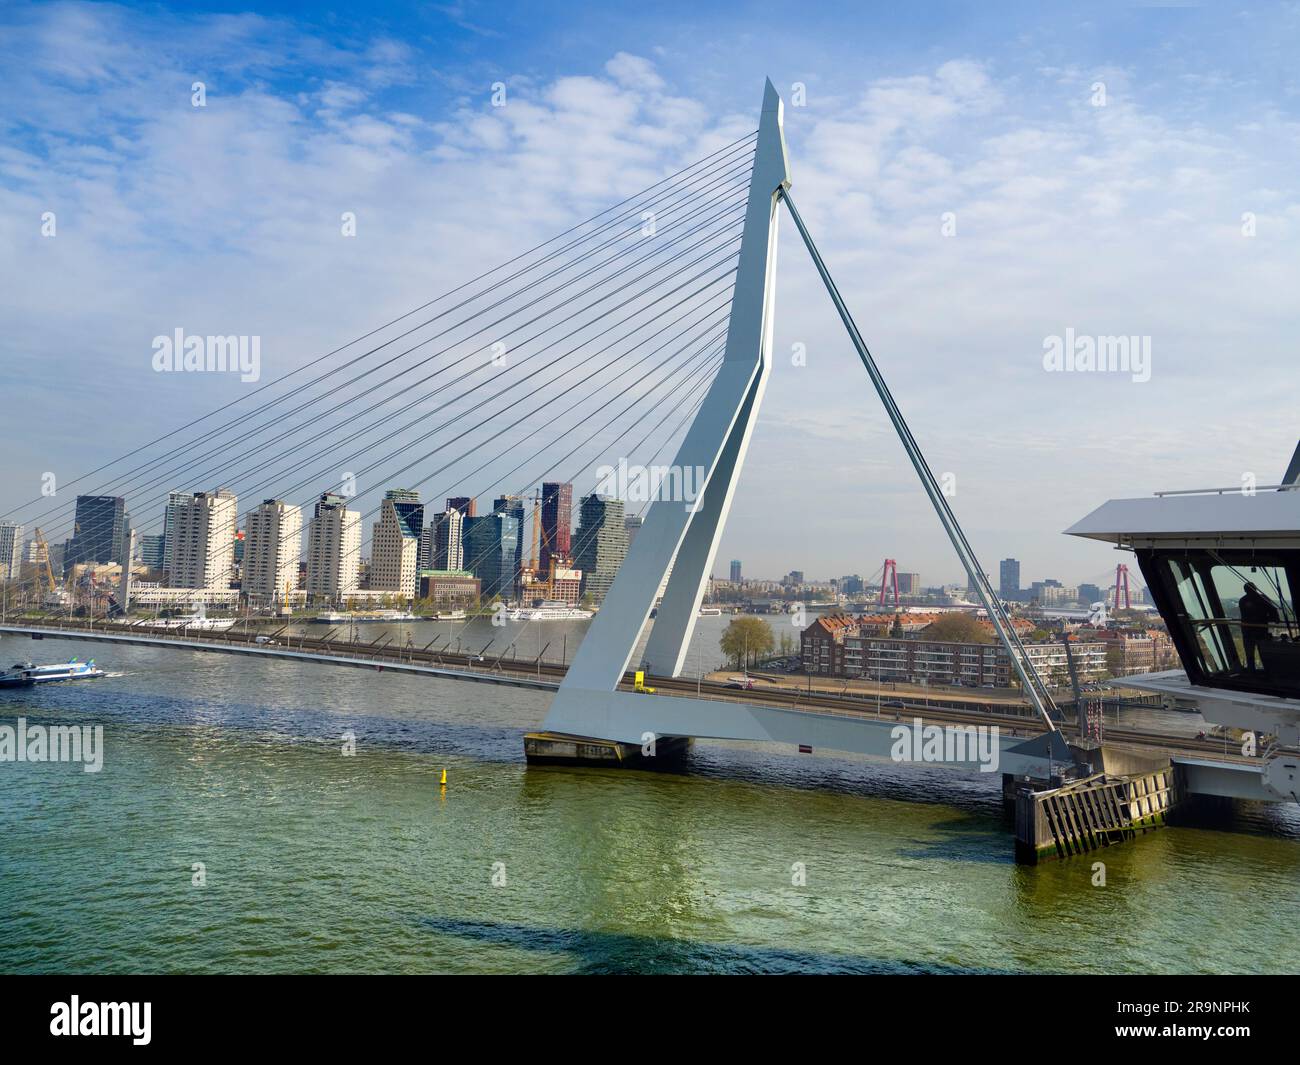 https://c8.alamy.com/compfr/2r9nphk/nomme-d-apres-le-grand-philosophe-et-humaniste-hollandais-de-la-renaissance-le-magnifique-nouveau-pont-suspendu-de-rotterdam-ajoute-considerablement-a-la-ville-2r9nphk.jpg